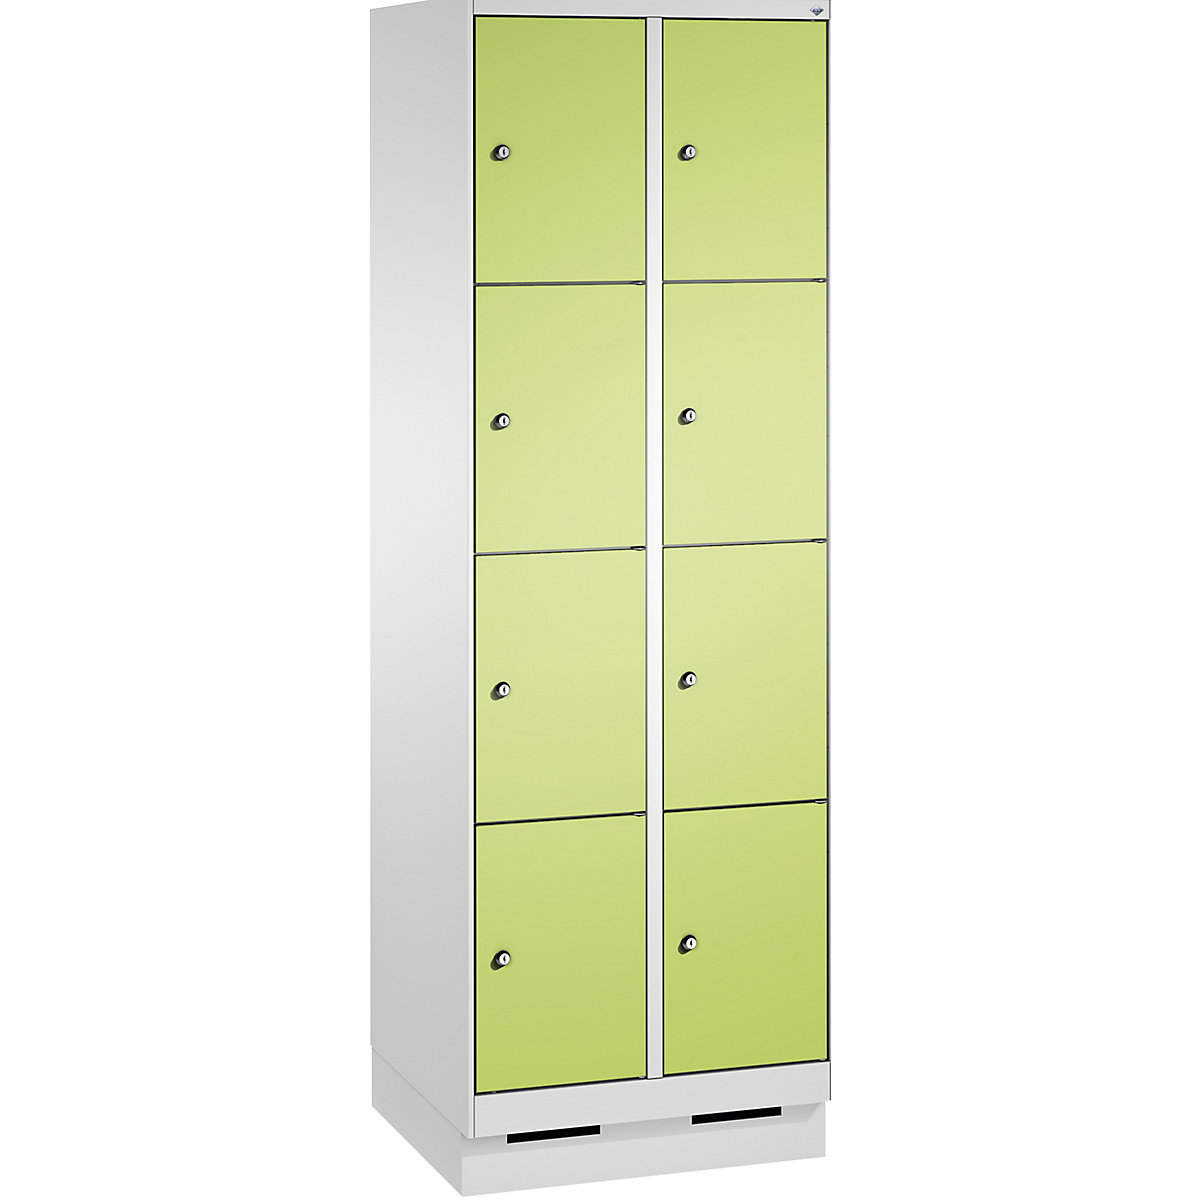 Armoire à casiers sur socle EVOLO – C+P, 2 compartiments, 4 casiers chacun, largeur compartiments 300 mm, gris clair / vert-16